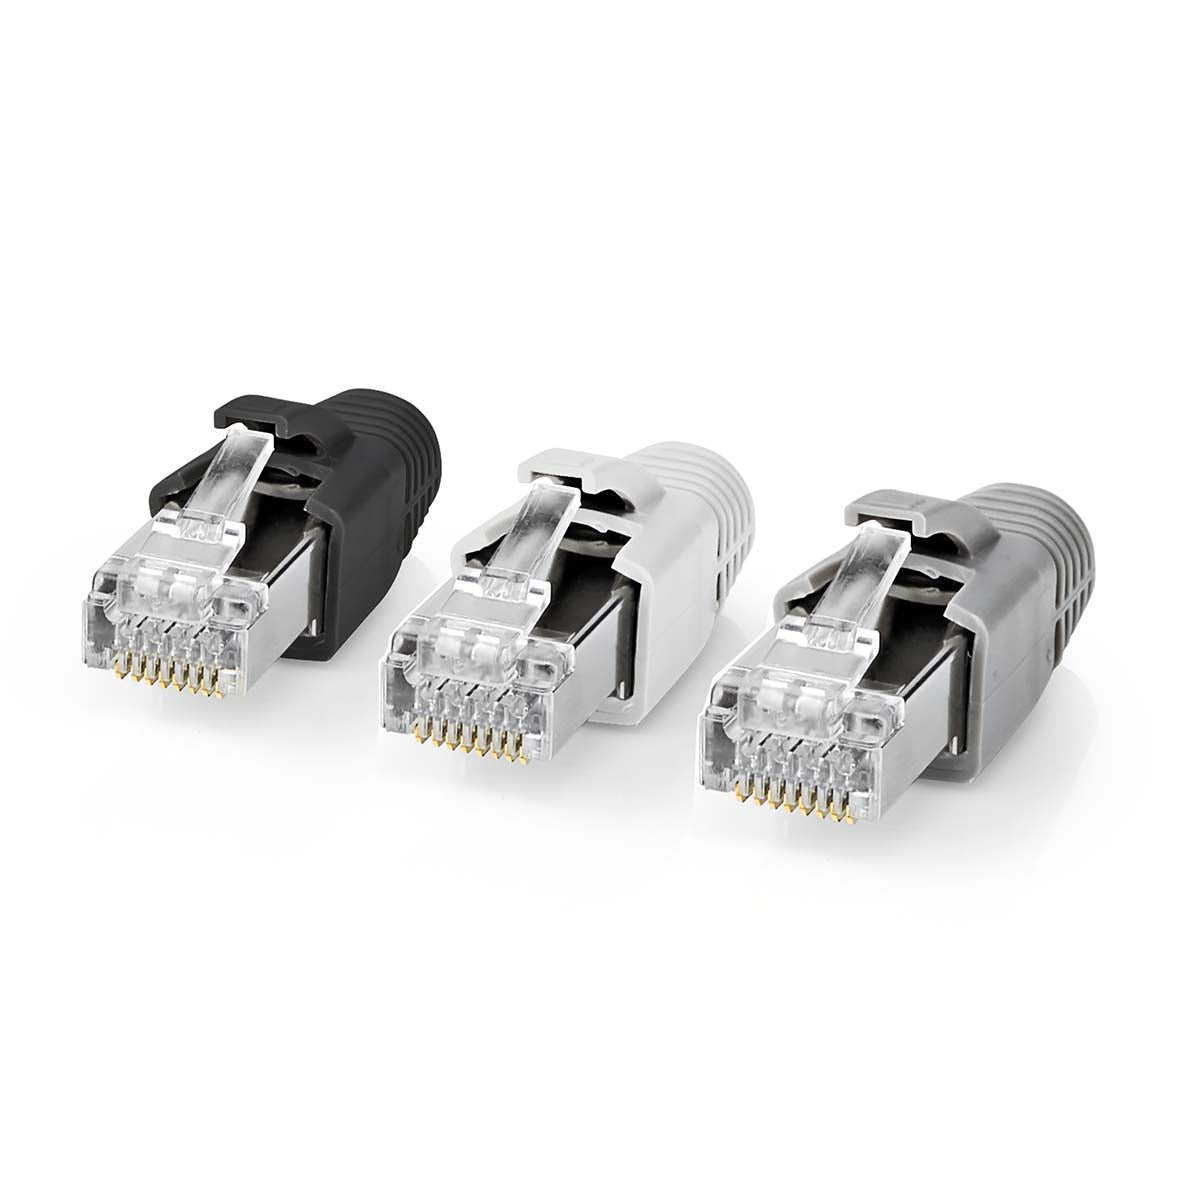 Nedis set 10 pezzi connettori RJ45, plug per cavi di rete CAT7 FTP